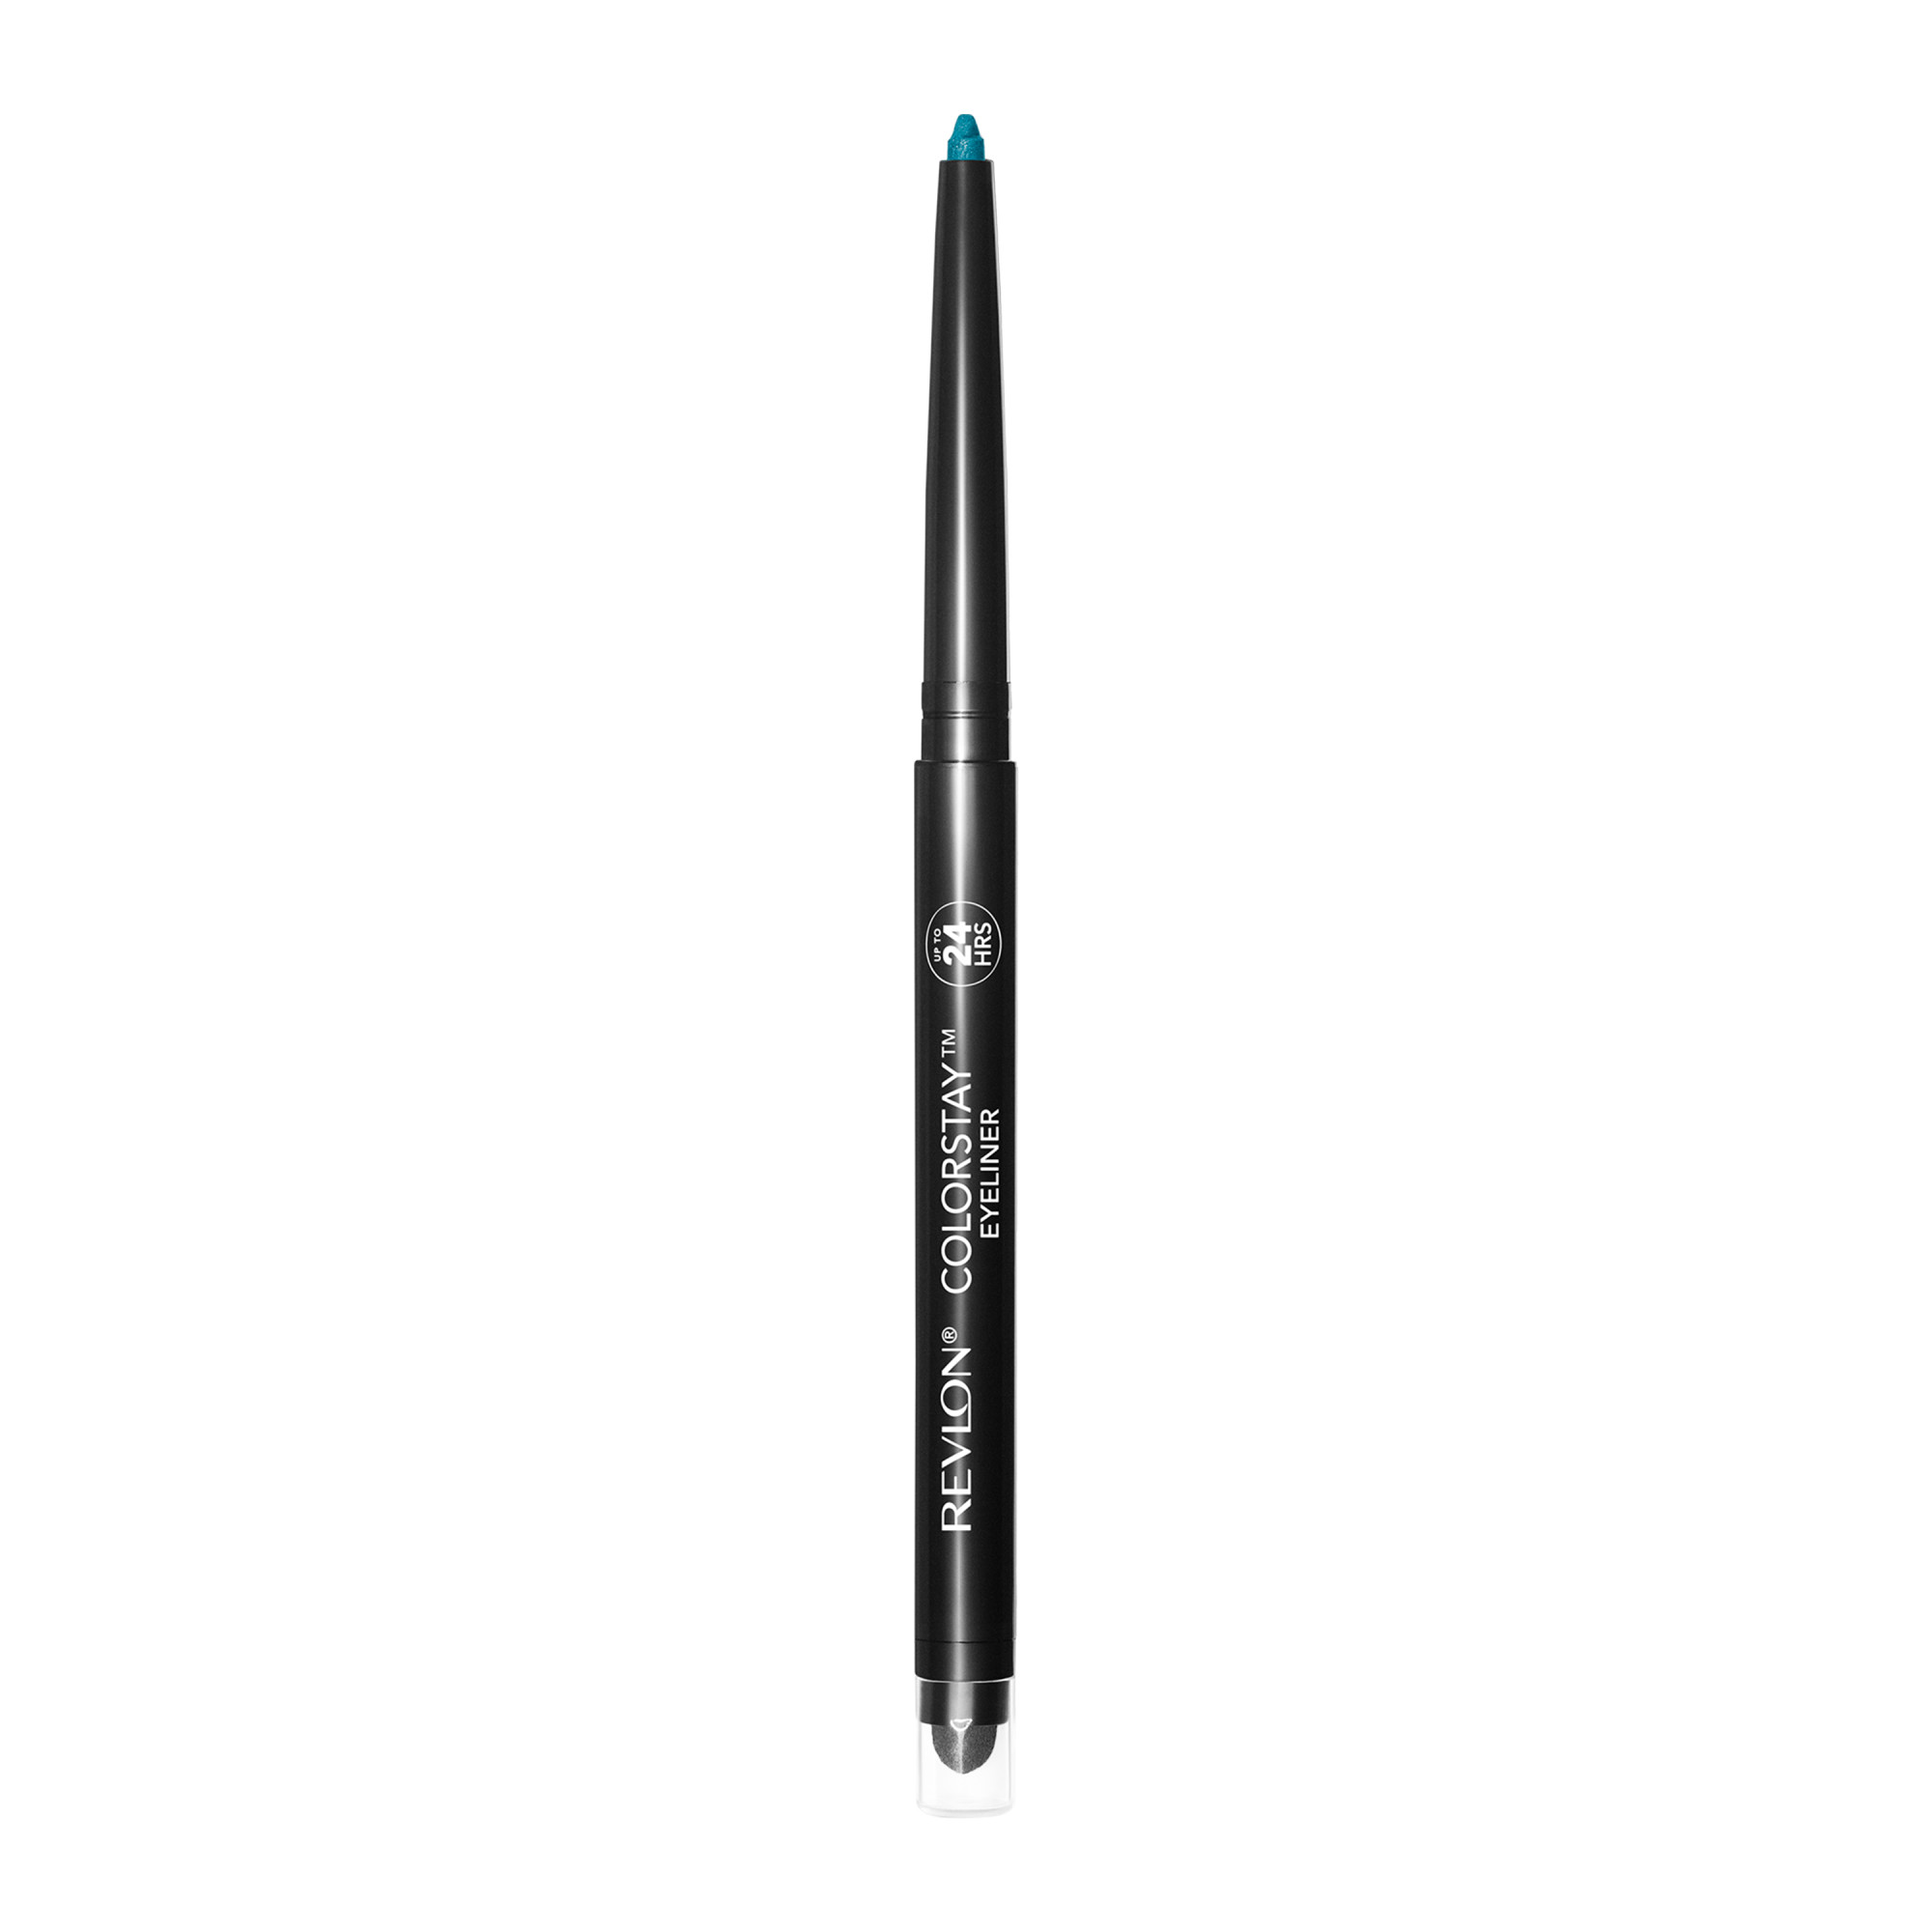 Revlon ColorStay Waterproof Eyeliner Pencil, 24HR Wear, Built-in Sharpener, 210 Teal, 0.01 oz - image 3 of 9